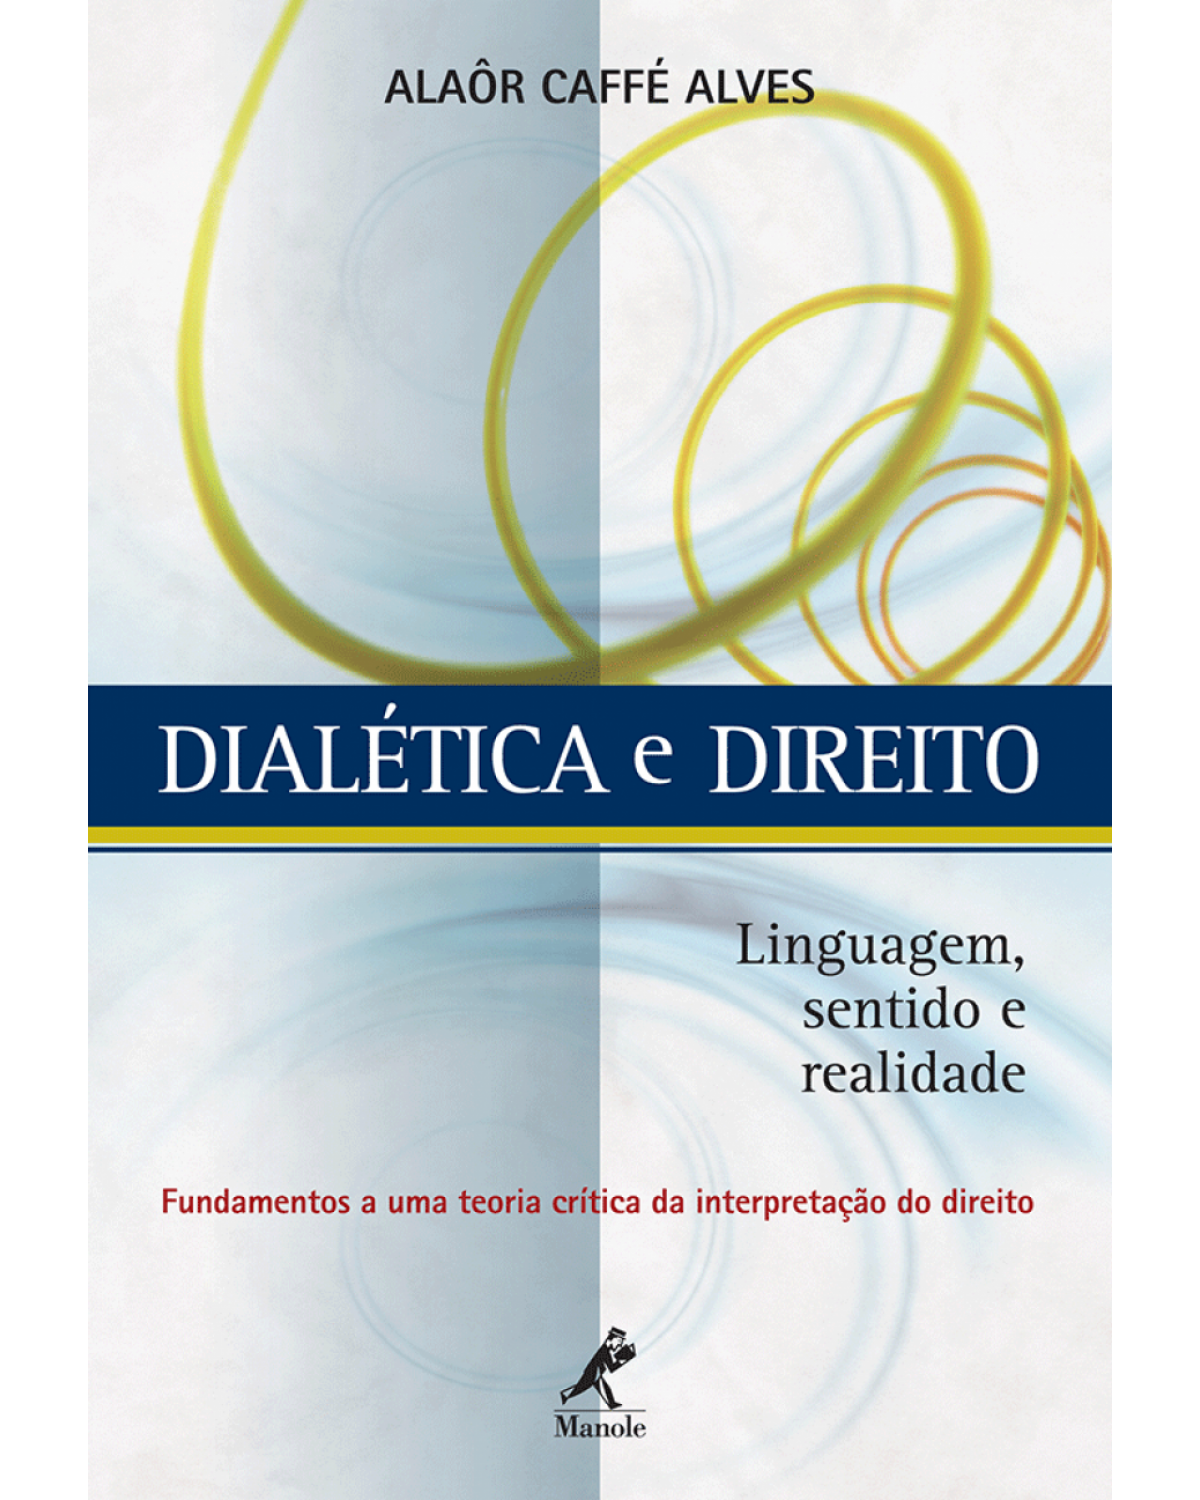 Dialética e direito - Linguagem, sentido e realidade - 1ª Edição | 2010